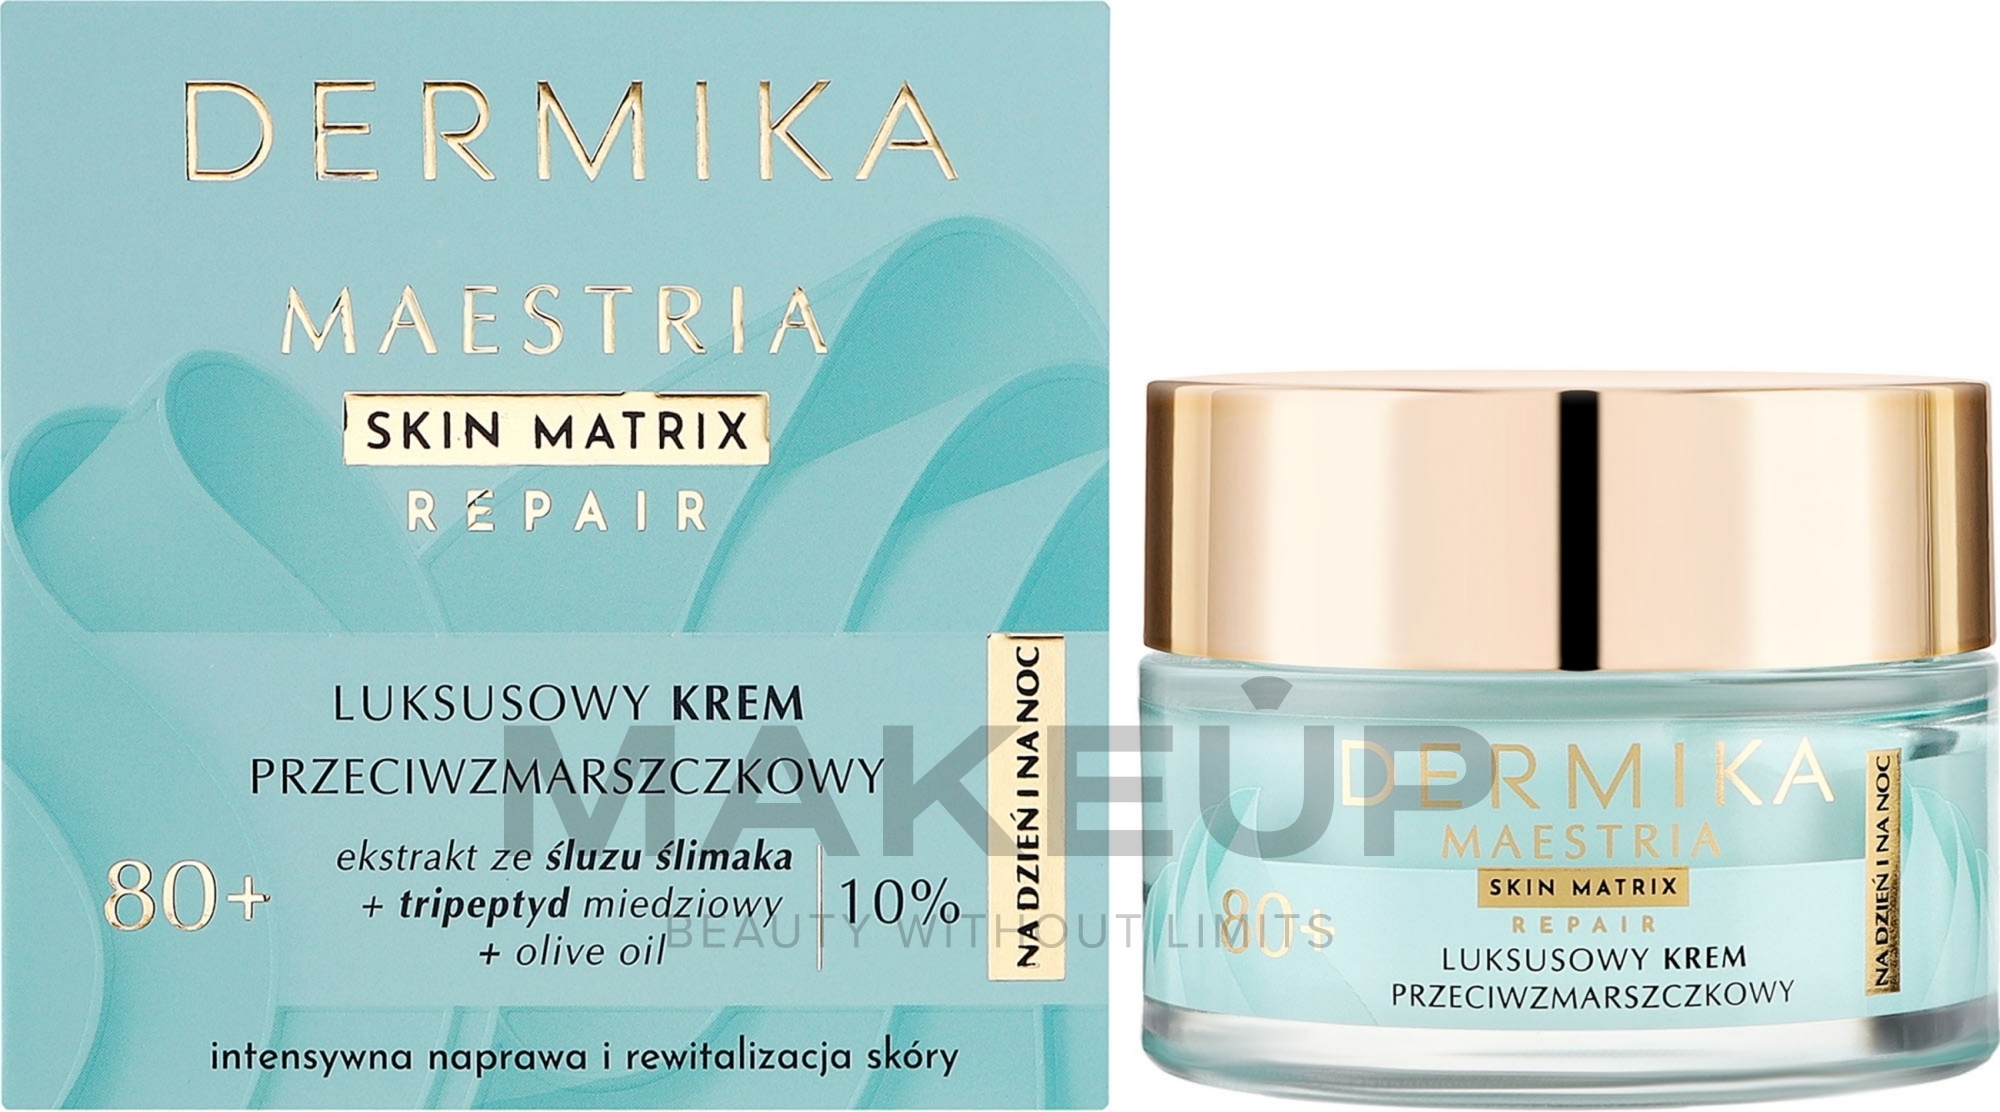 Luksusowy krem przeciwzmarszczkowy 80+ na dzień i na noc dla skóry dojrzałej, w tym wrażliwej. - Dermika Maestria Skin Matrix — Zdjęcie 50 ml